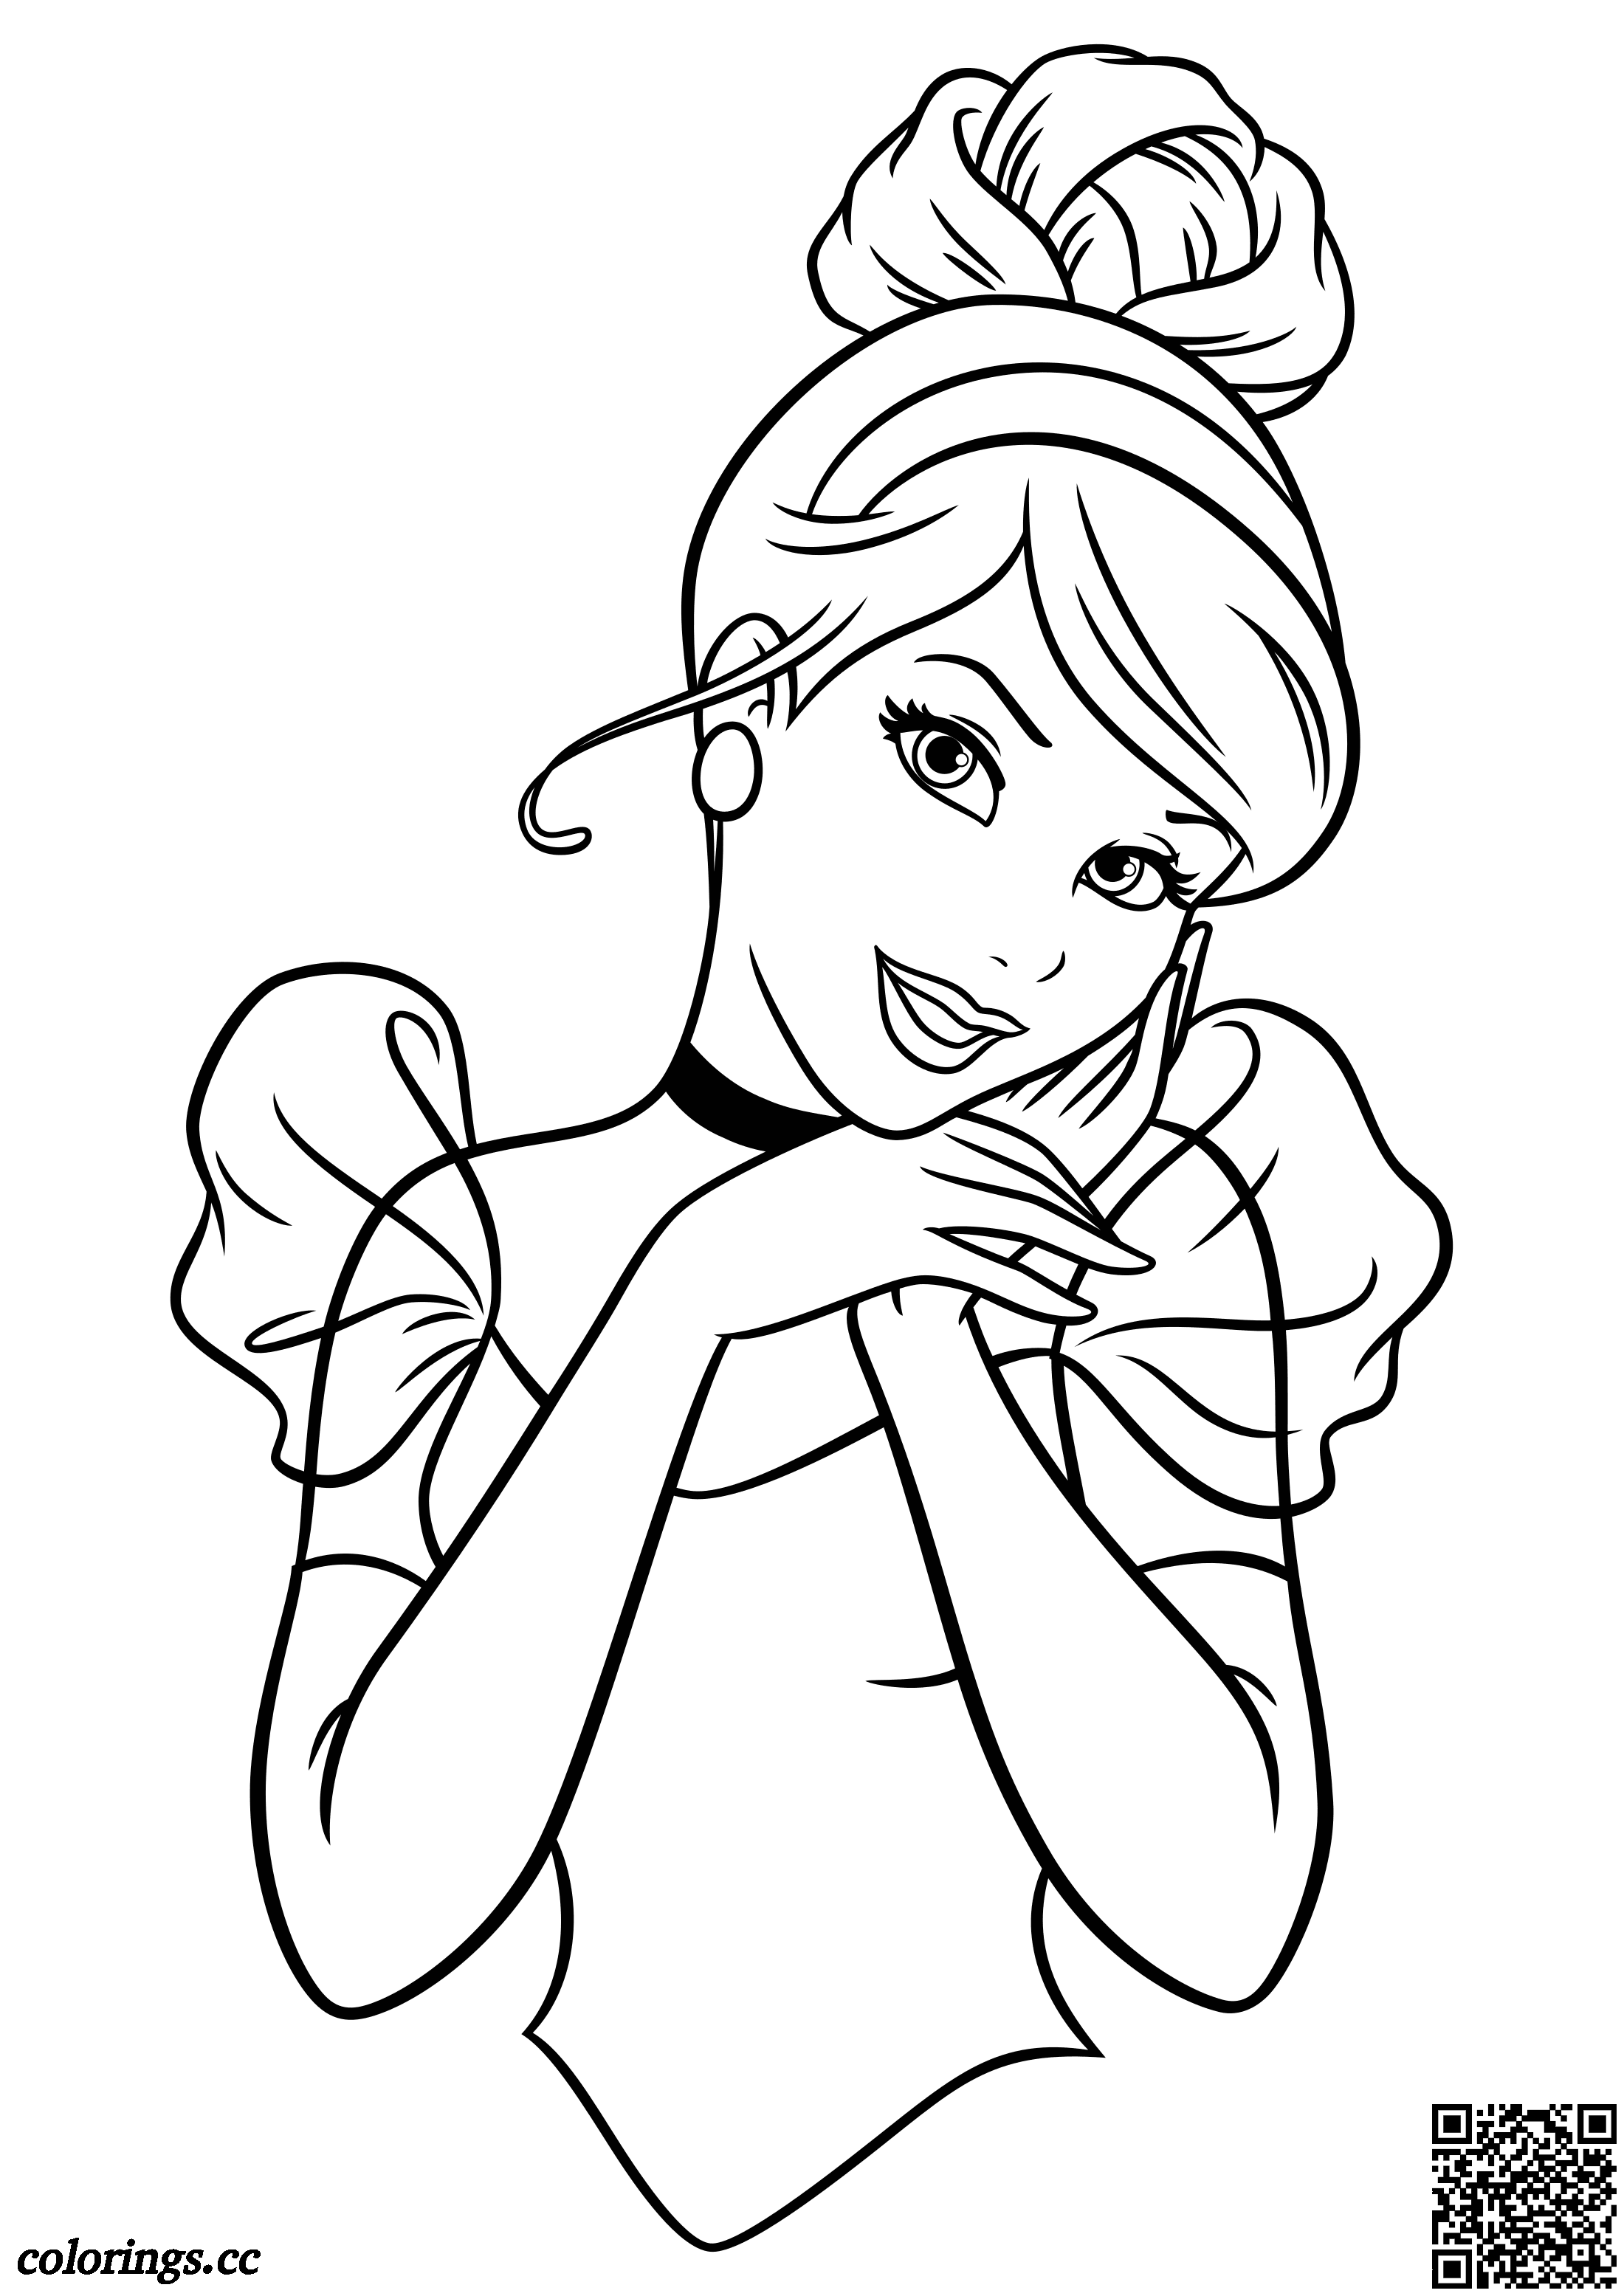 Beskæftiget Ryg, ryg, ryg del sikkerhed Sød Askepot tegninger til farvelægning, Disney prinsesser tegninger til  farvelægning - Colorings.cc